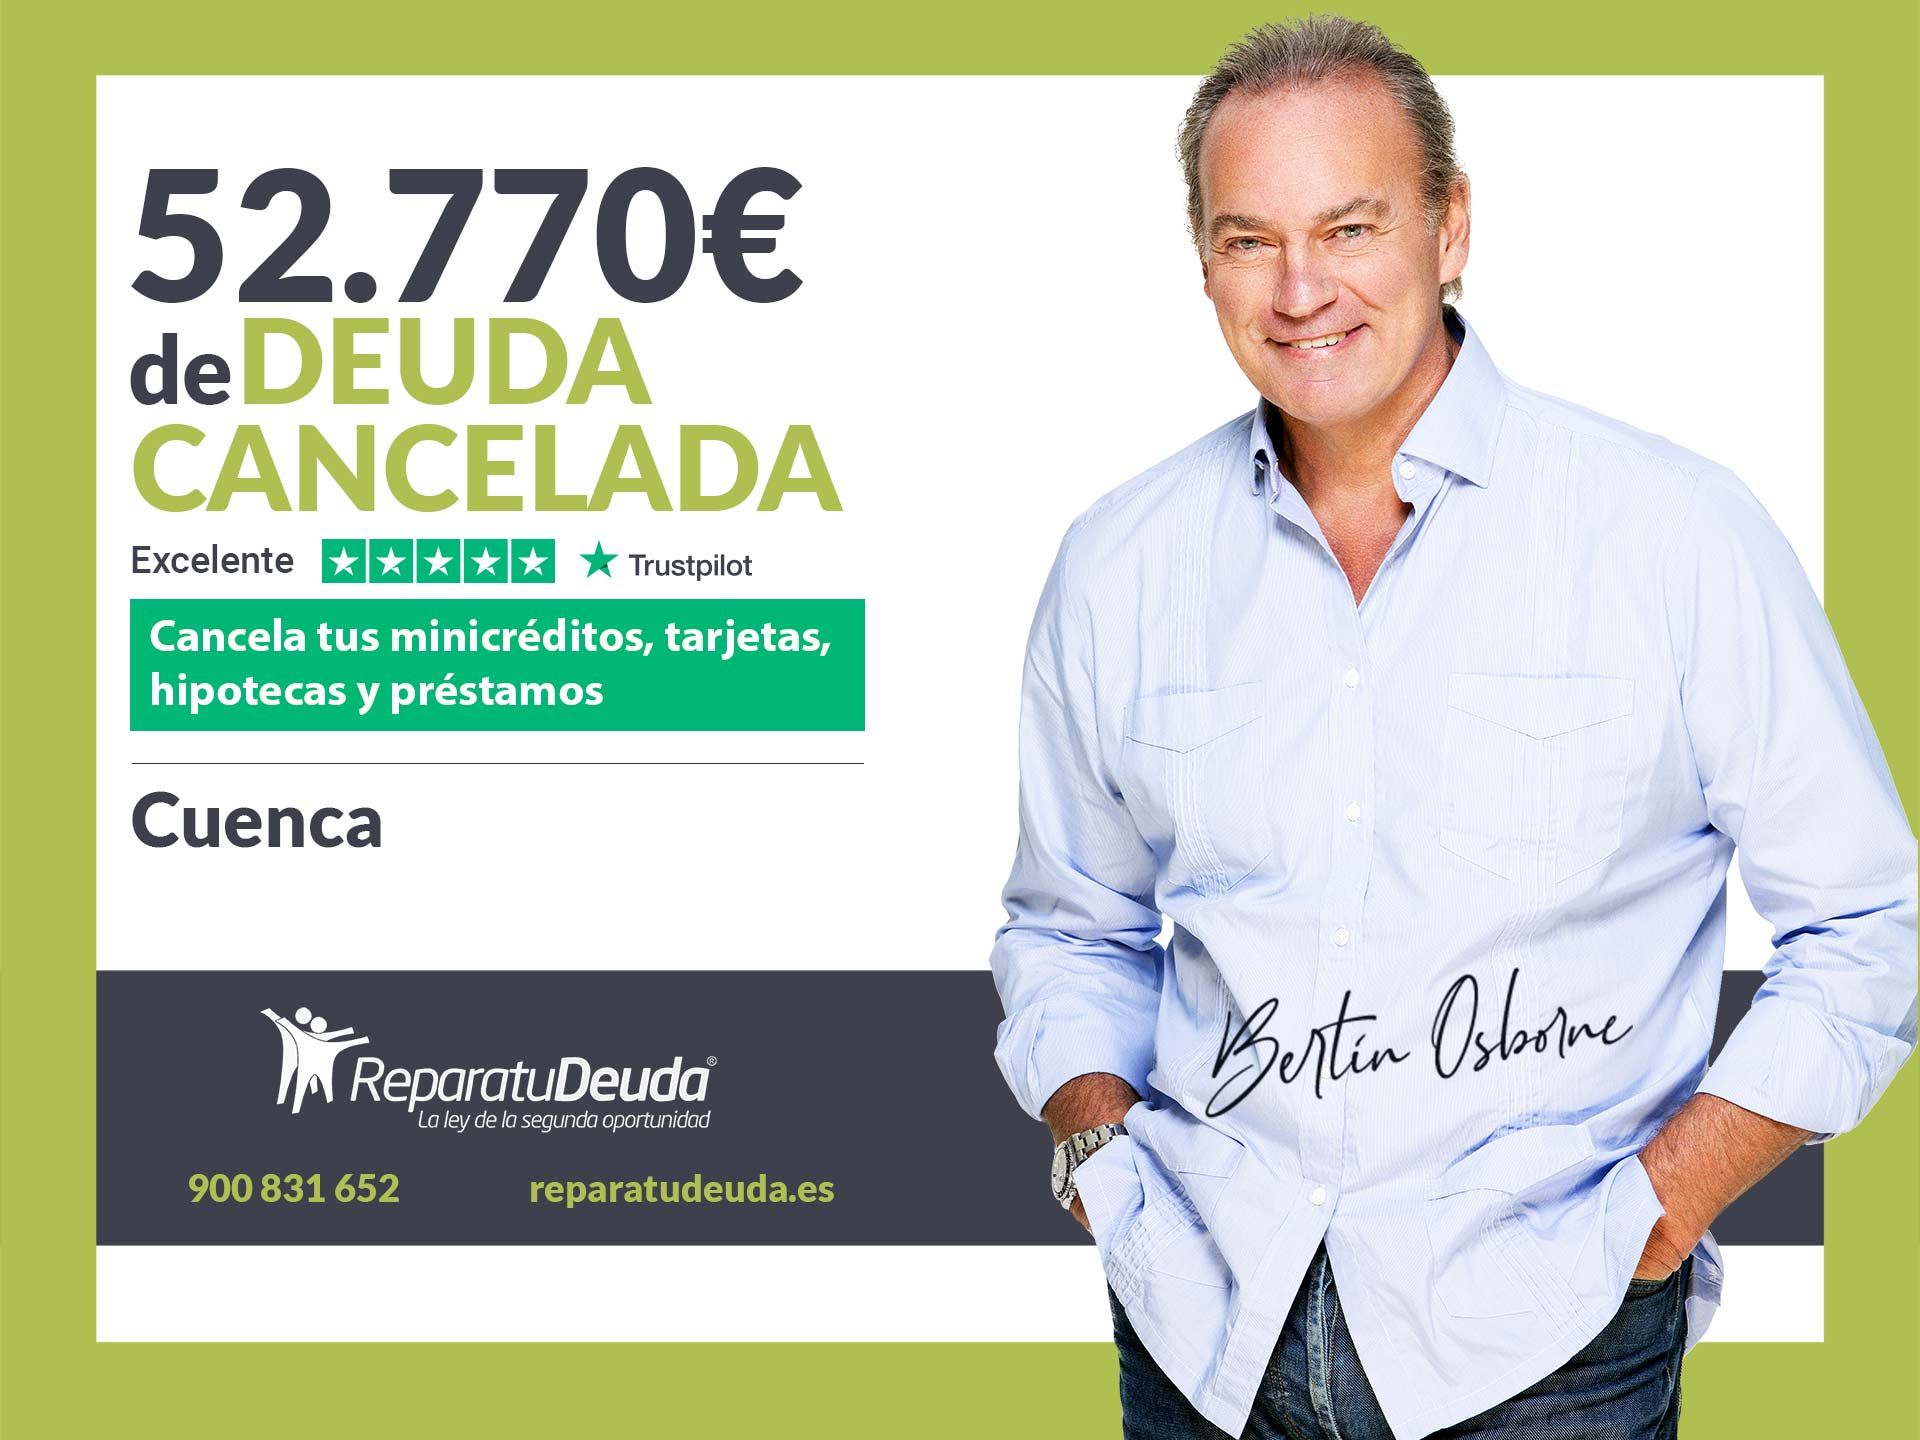 Repara tu Deuda Abogados cancela 52.770? en Cuenca (Castilla-La Mancha) con la Ley de Segunda Oportunidad